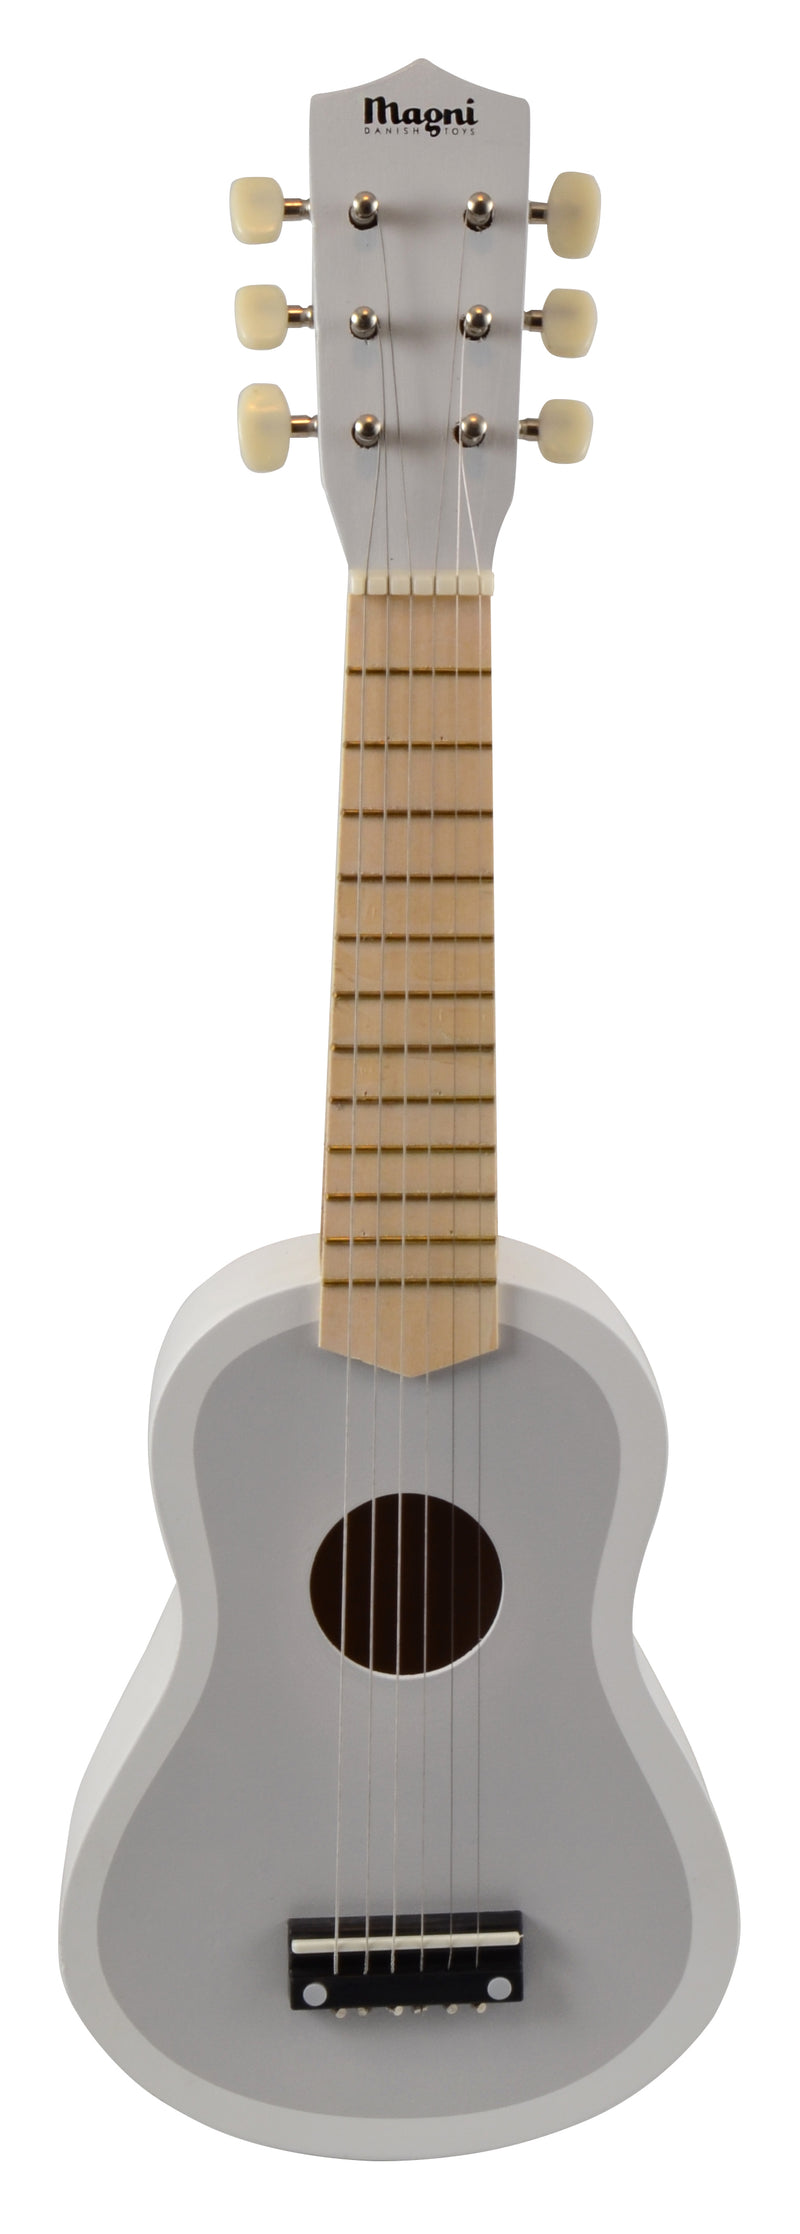 Magni - Guitar i grå/hvid i træ